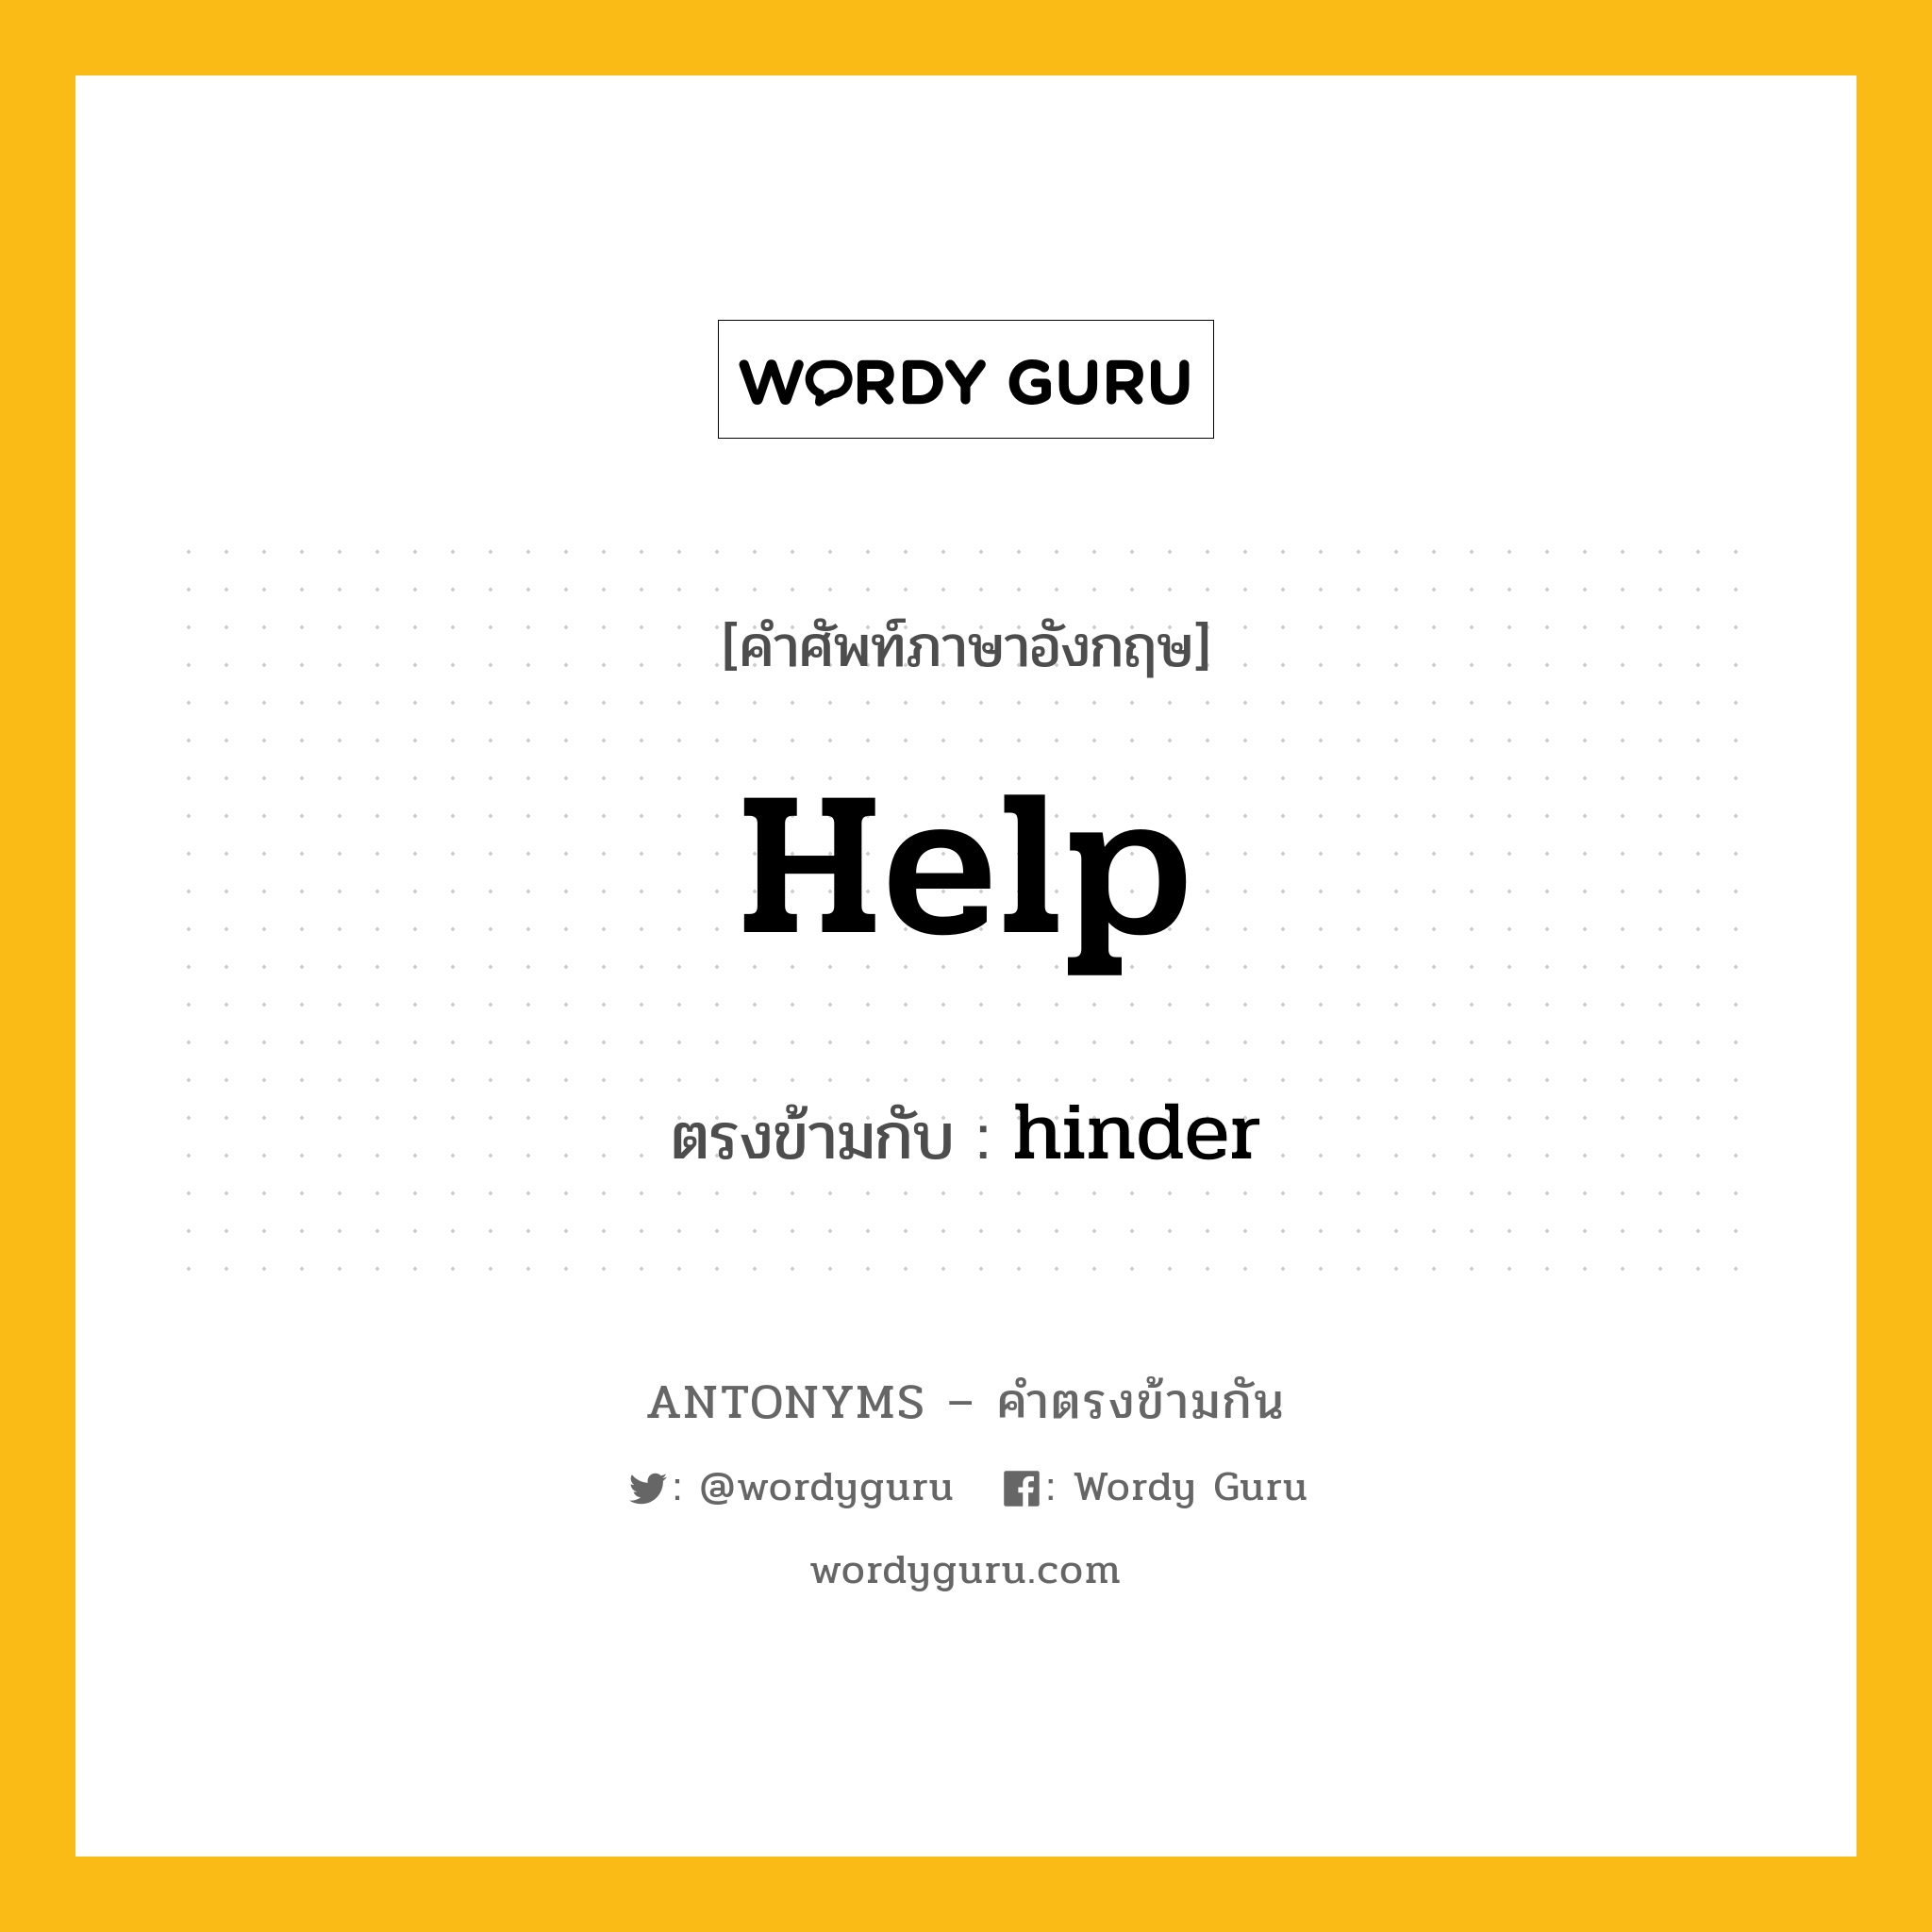 help เป็นคำตรงข้ามกับคำไหนบ้าง?, คำศัพท์ภาษาอังกฤษ help ตรงข้ามกับ hinder หมวด hinder